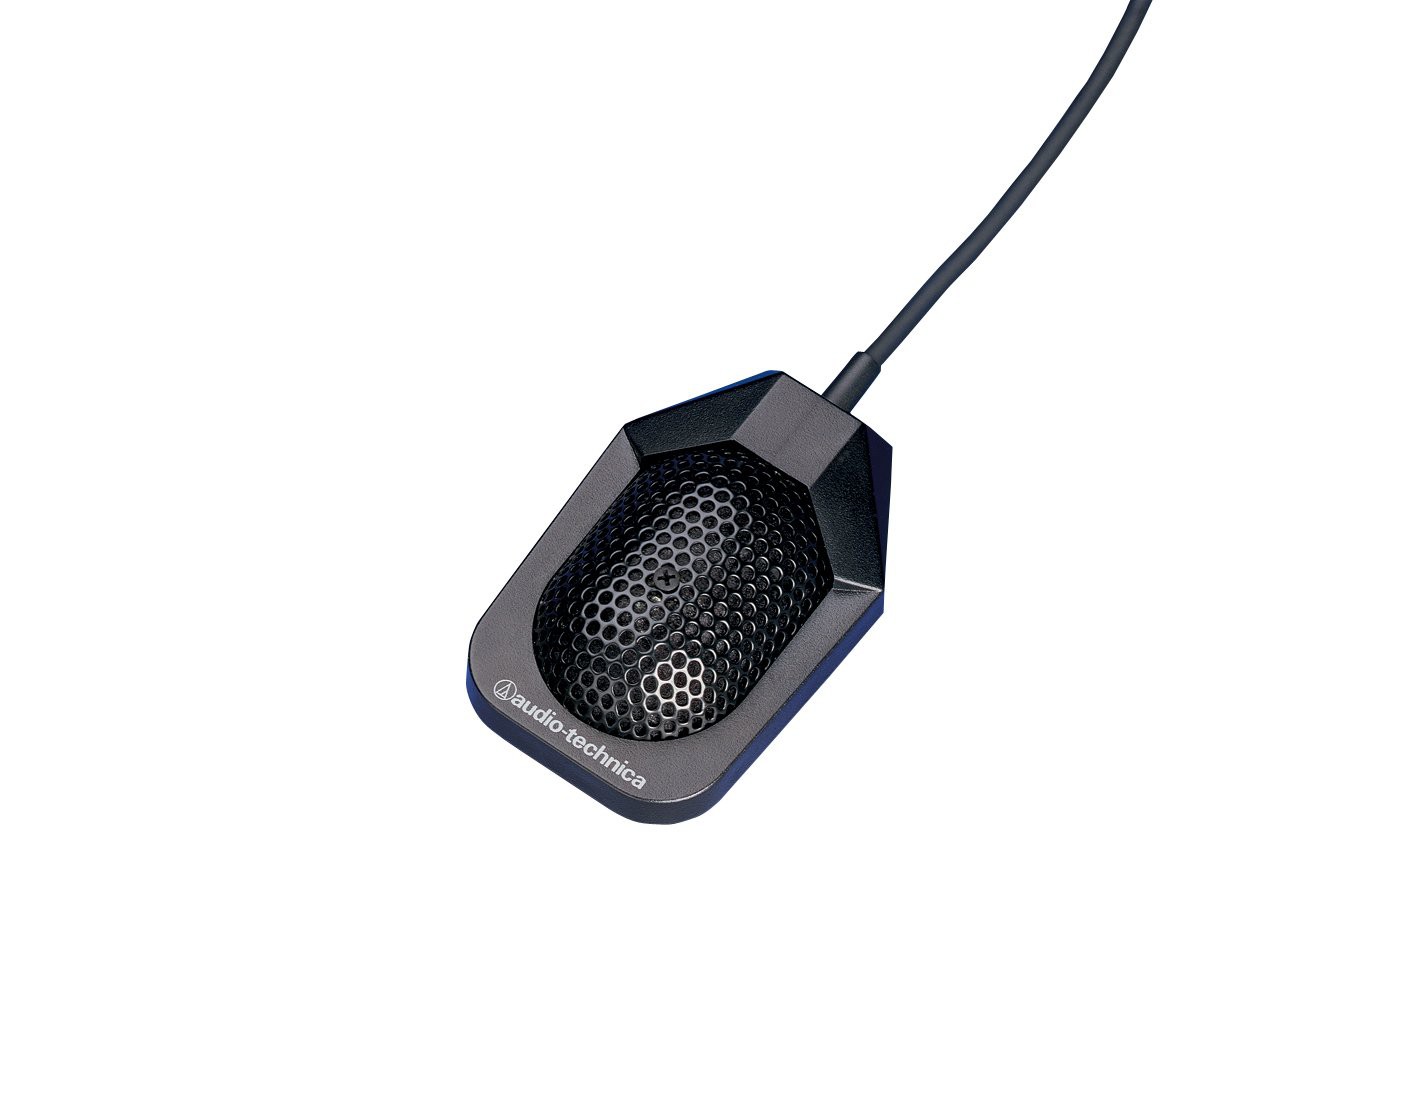 Audio-Technica PRO42 - Mikrofon poj. miniat. powierzchniowy